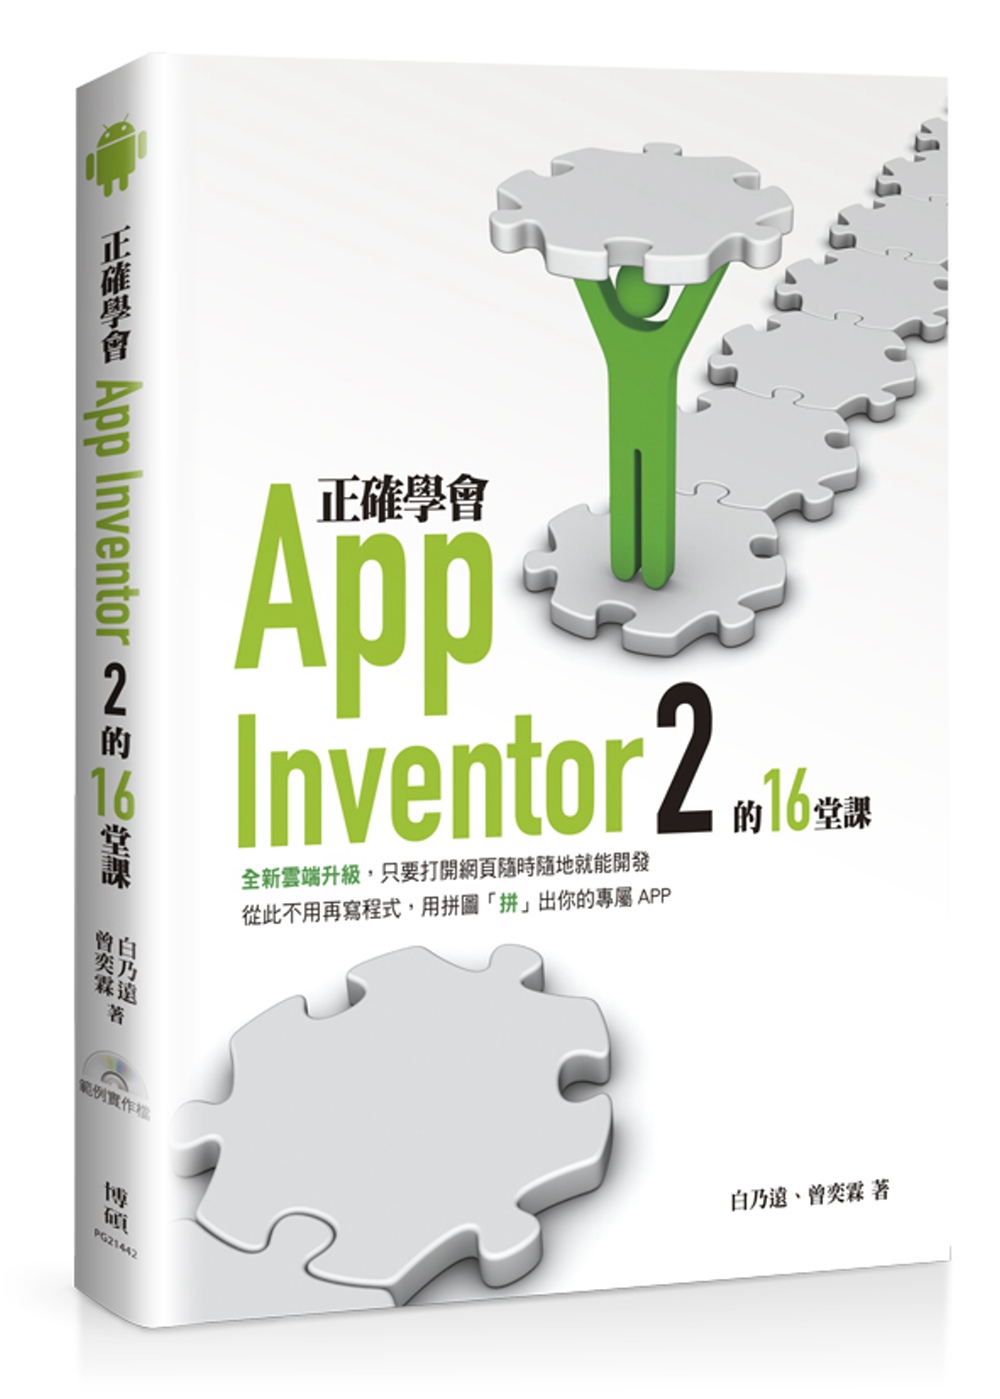 正確學會App Inventor 2的16堂課